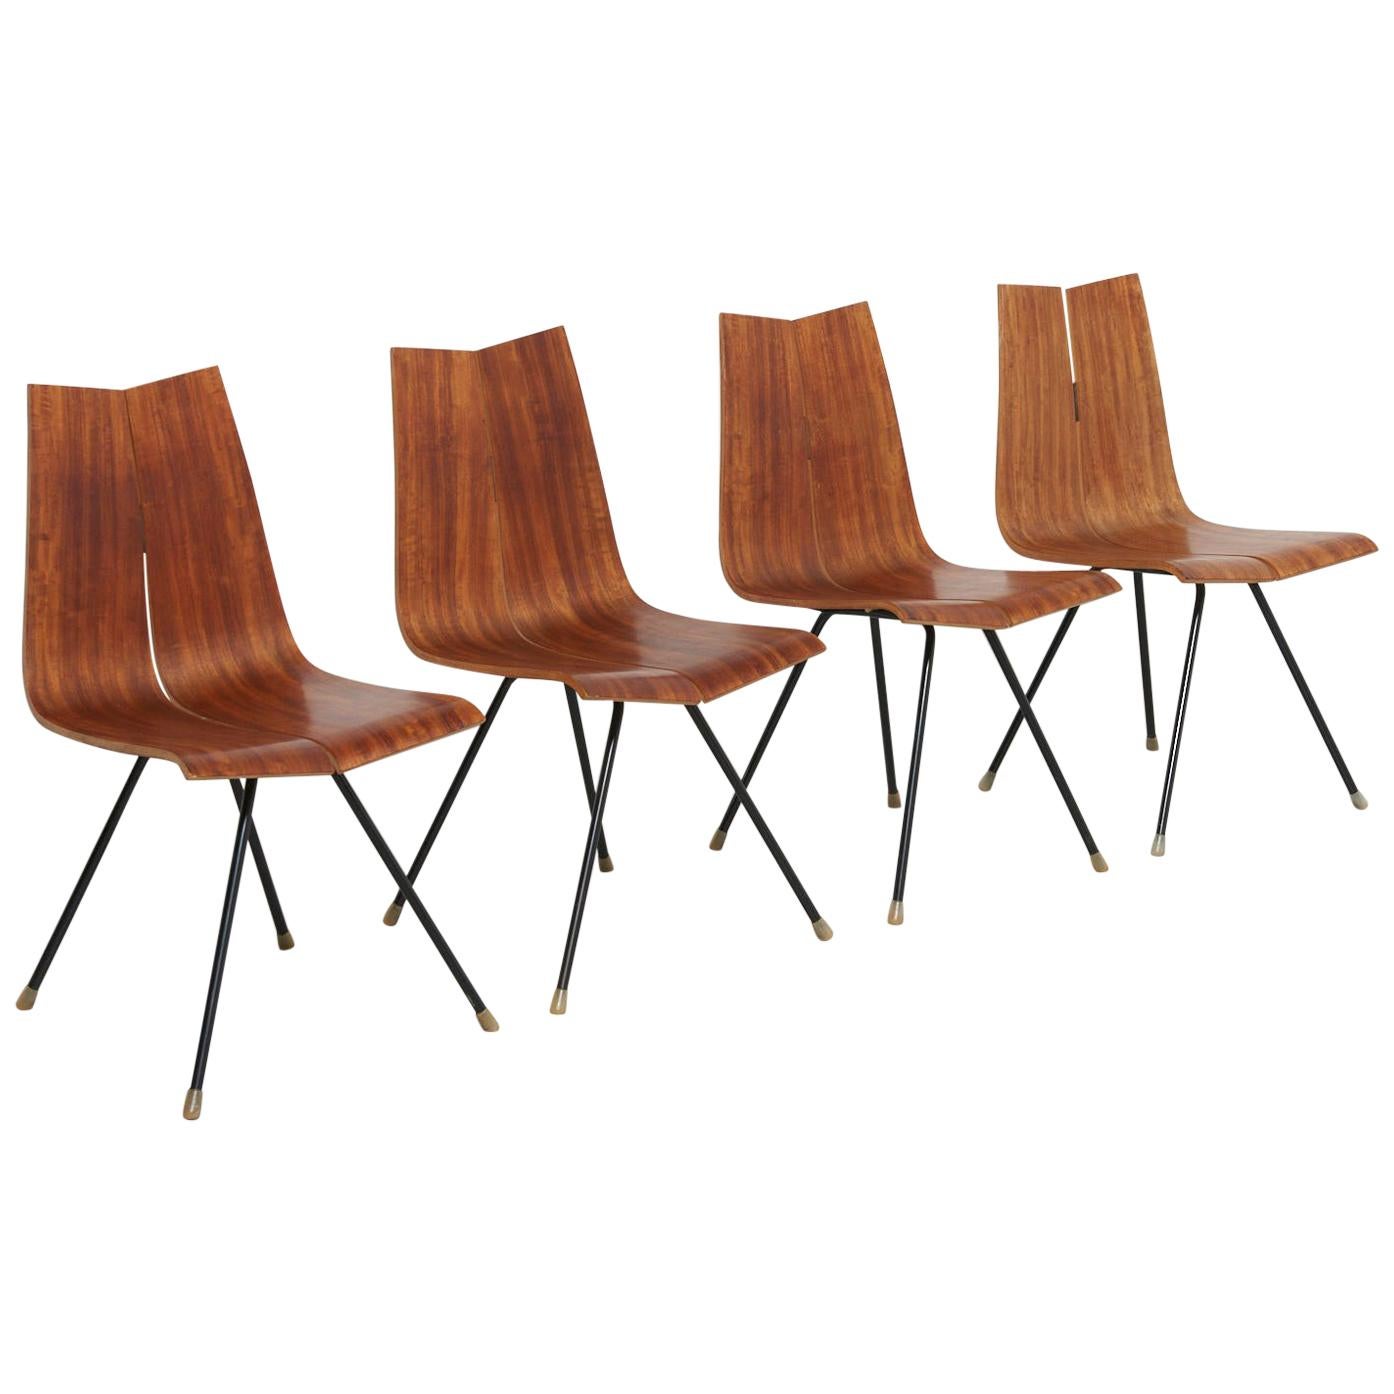 4 'GA' Chairs by Hans Bellmann in 1955, Made by Horgen Glarus in Switzerland